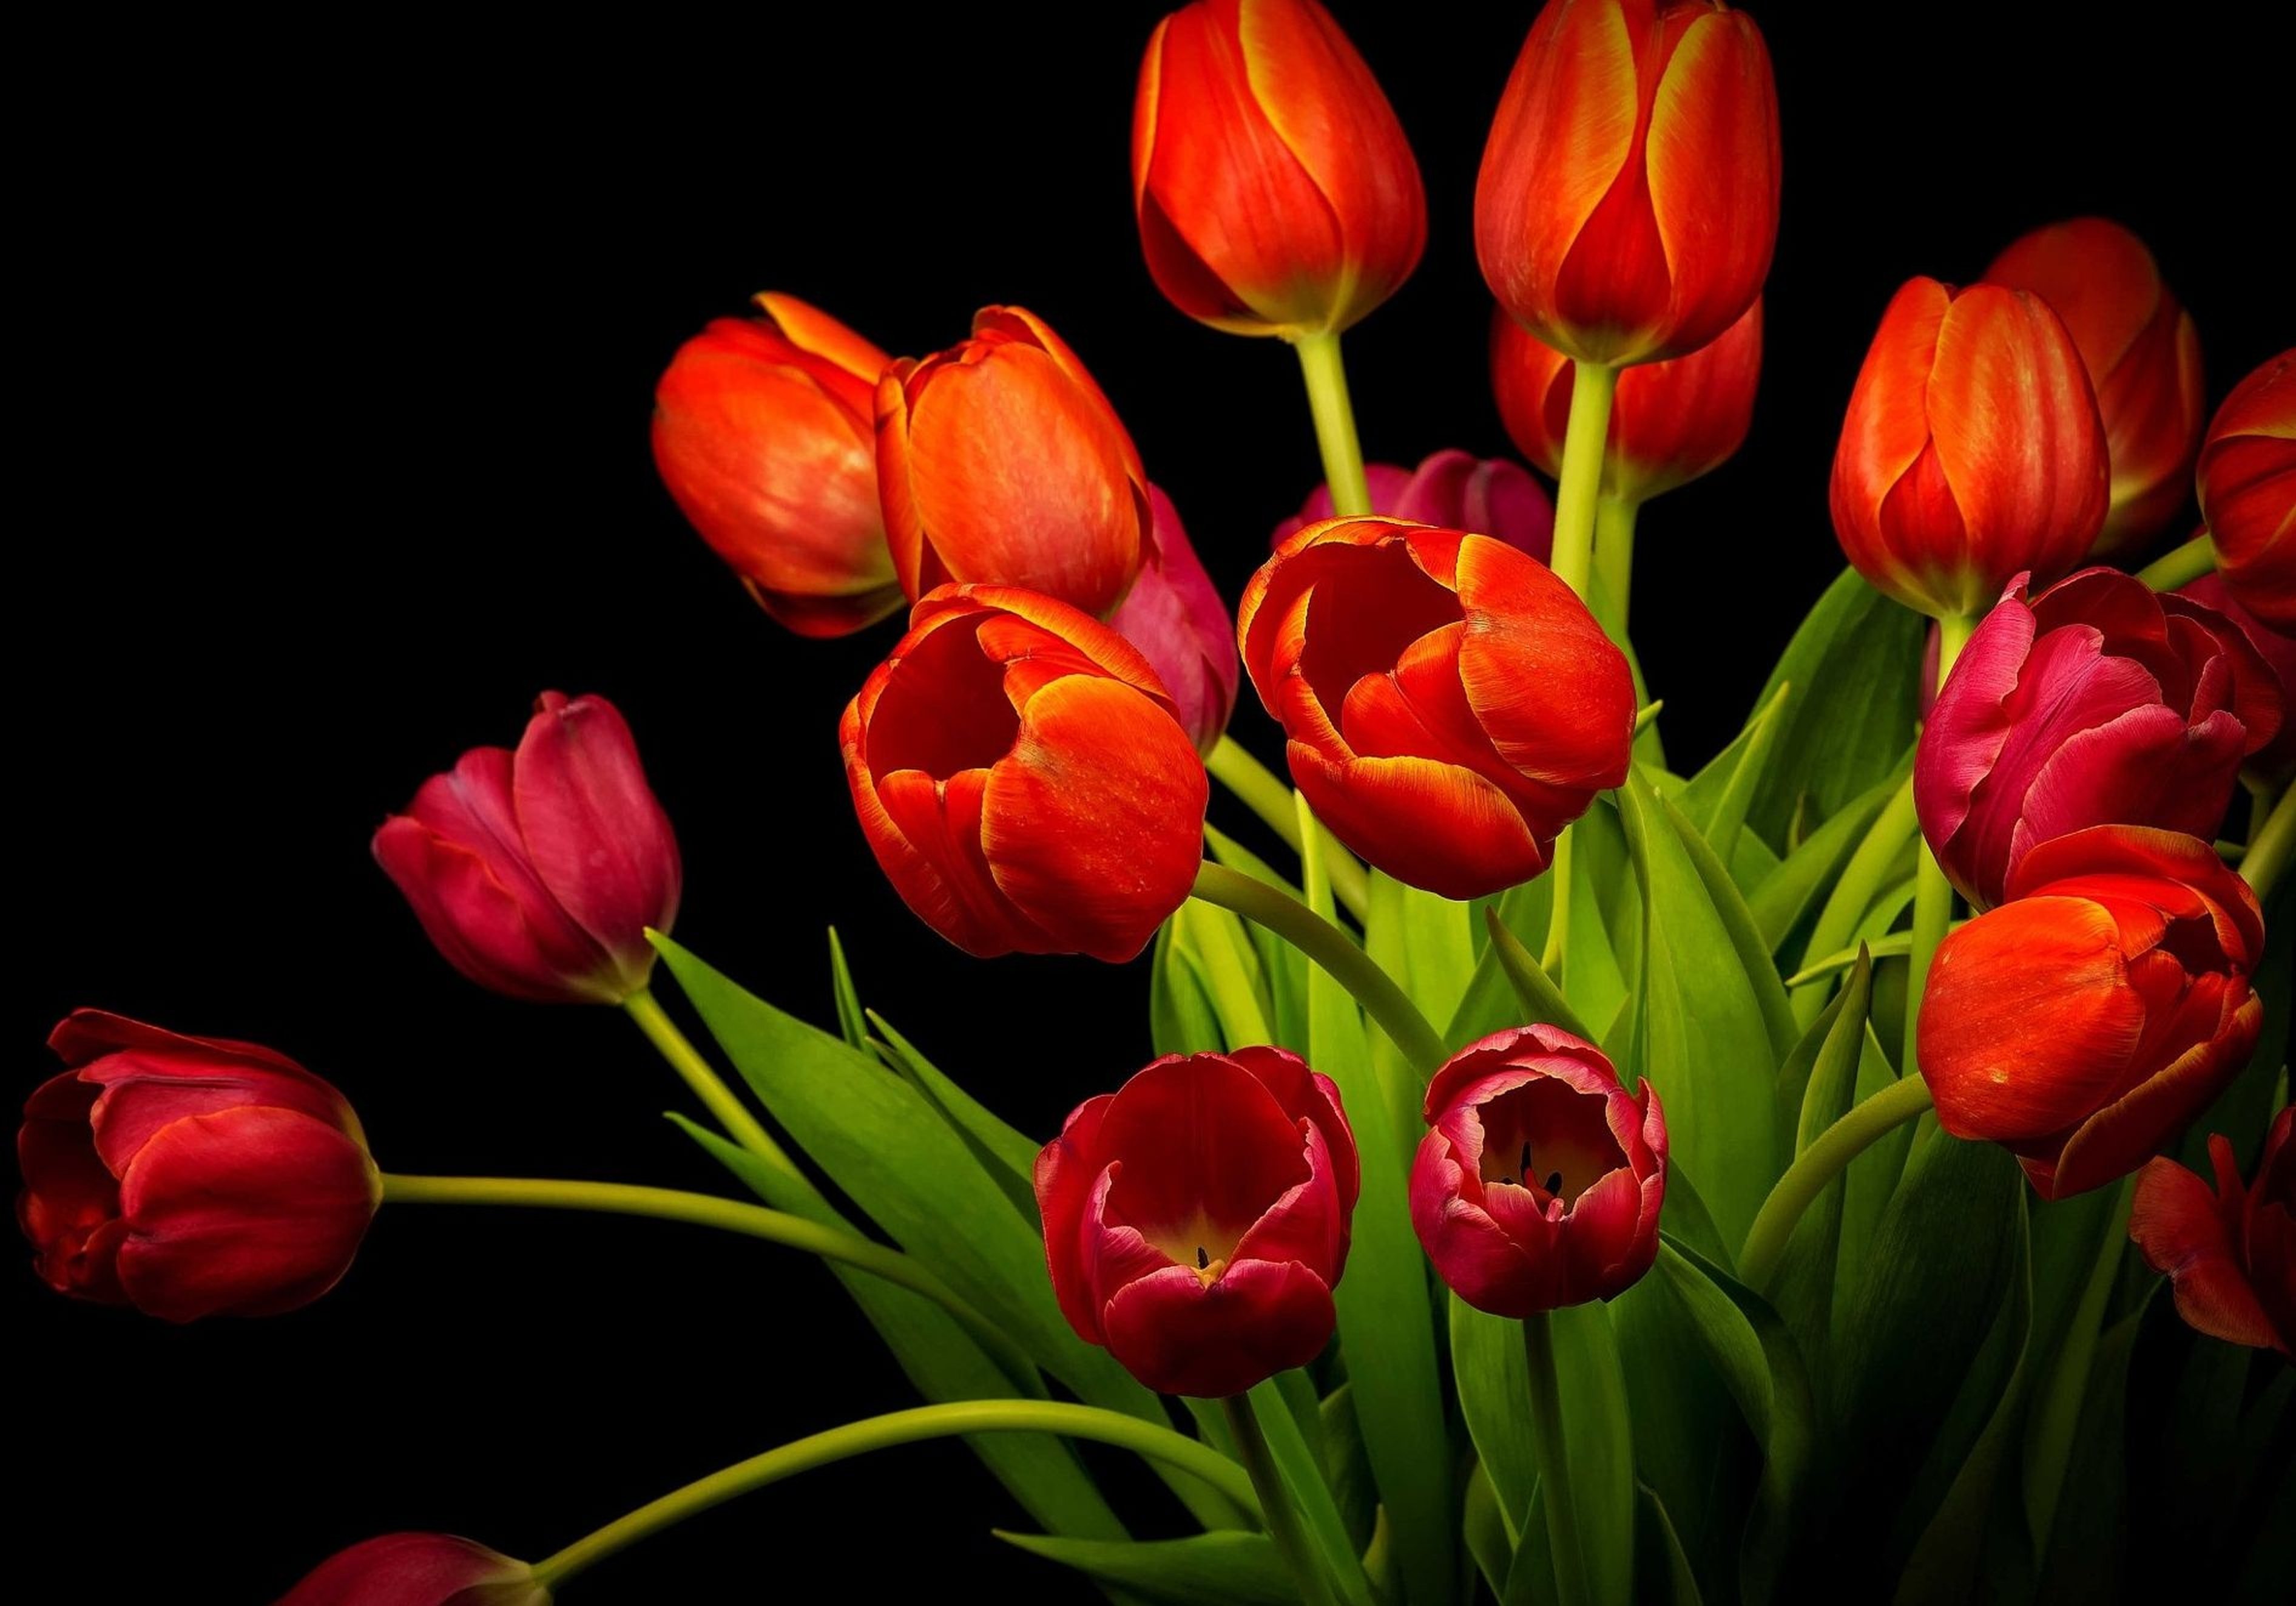 Обои на телефон красивые тюльпаны. Цветы тюльпаны. Красные тюльпаны. Красивые тюльпаны. Красивые красные тюльпаны.